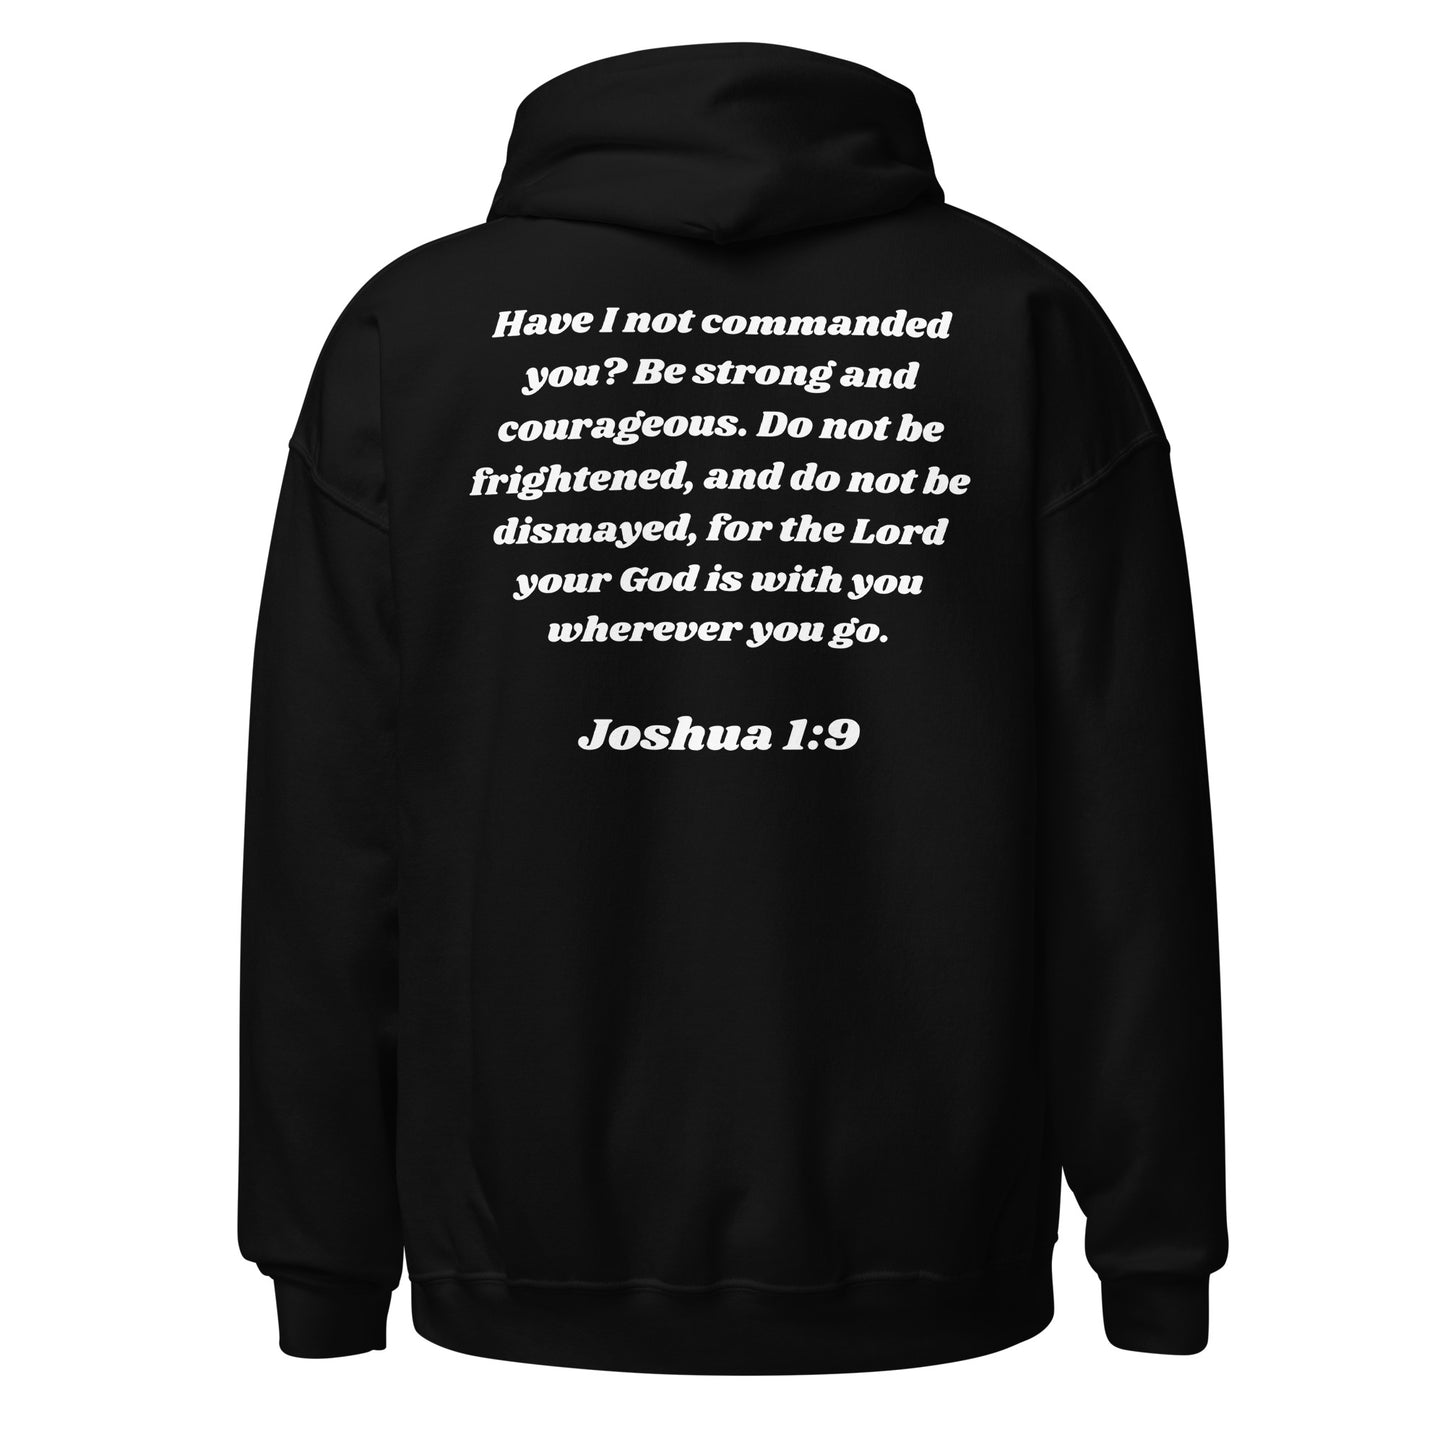 Joshua 1:9